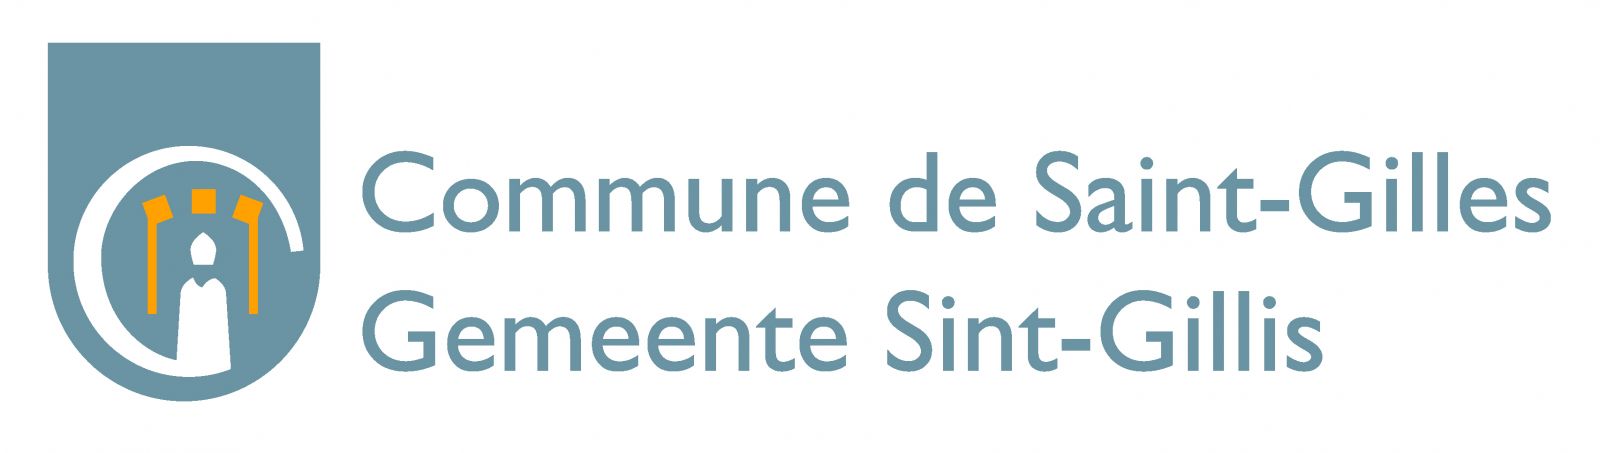 Logo commune de Saint-Gilles